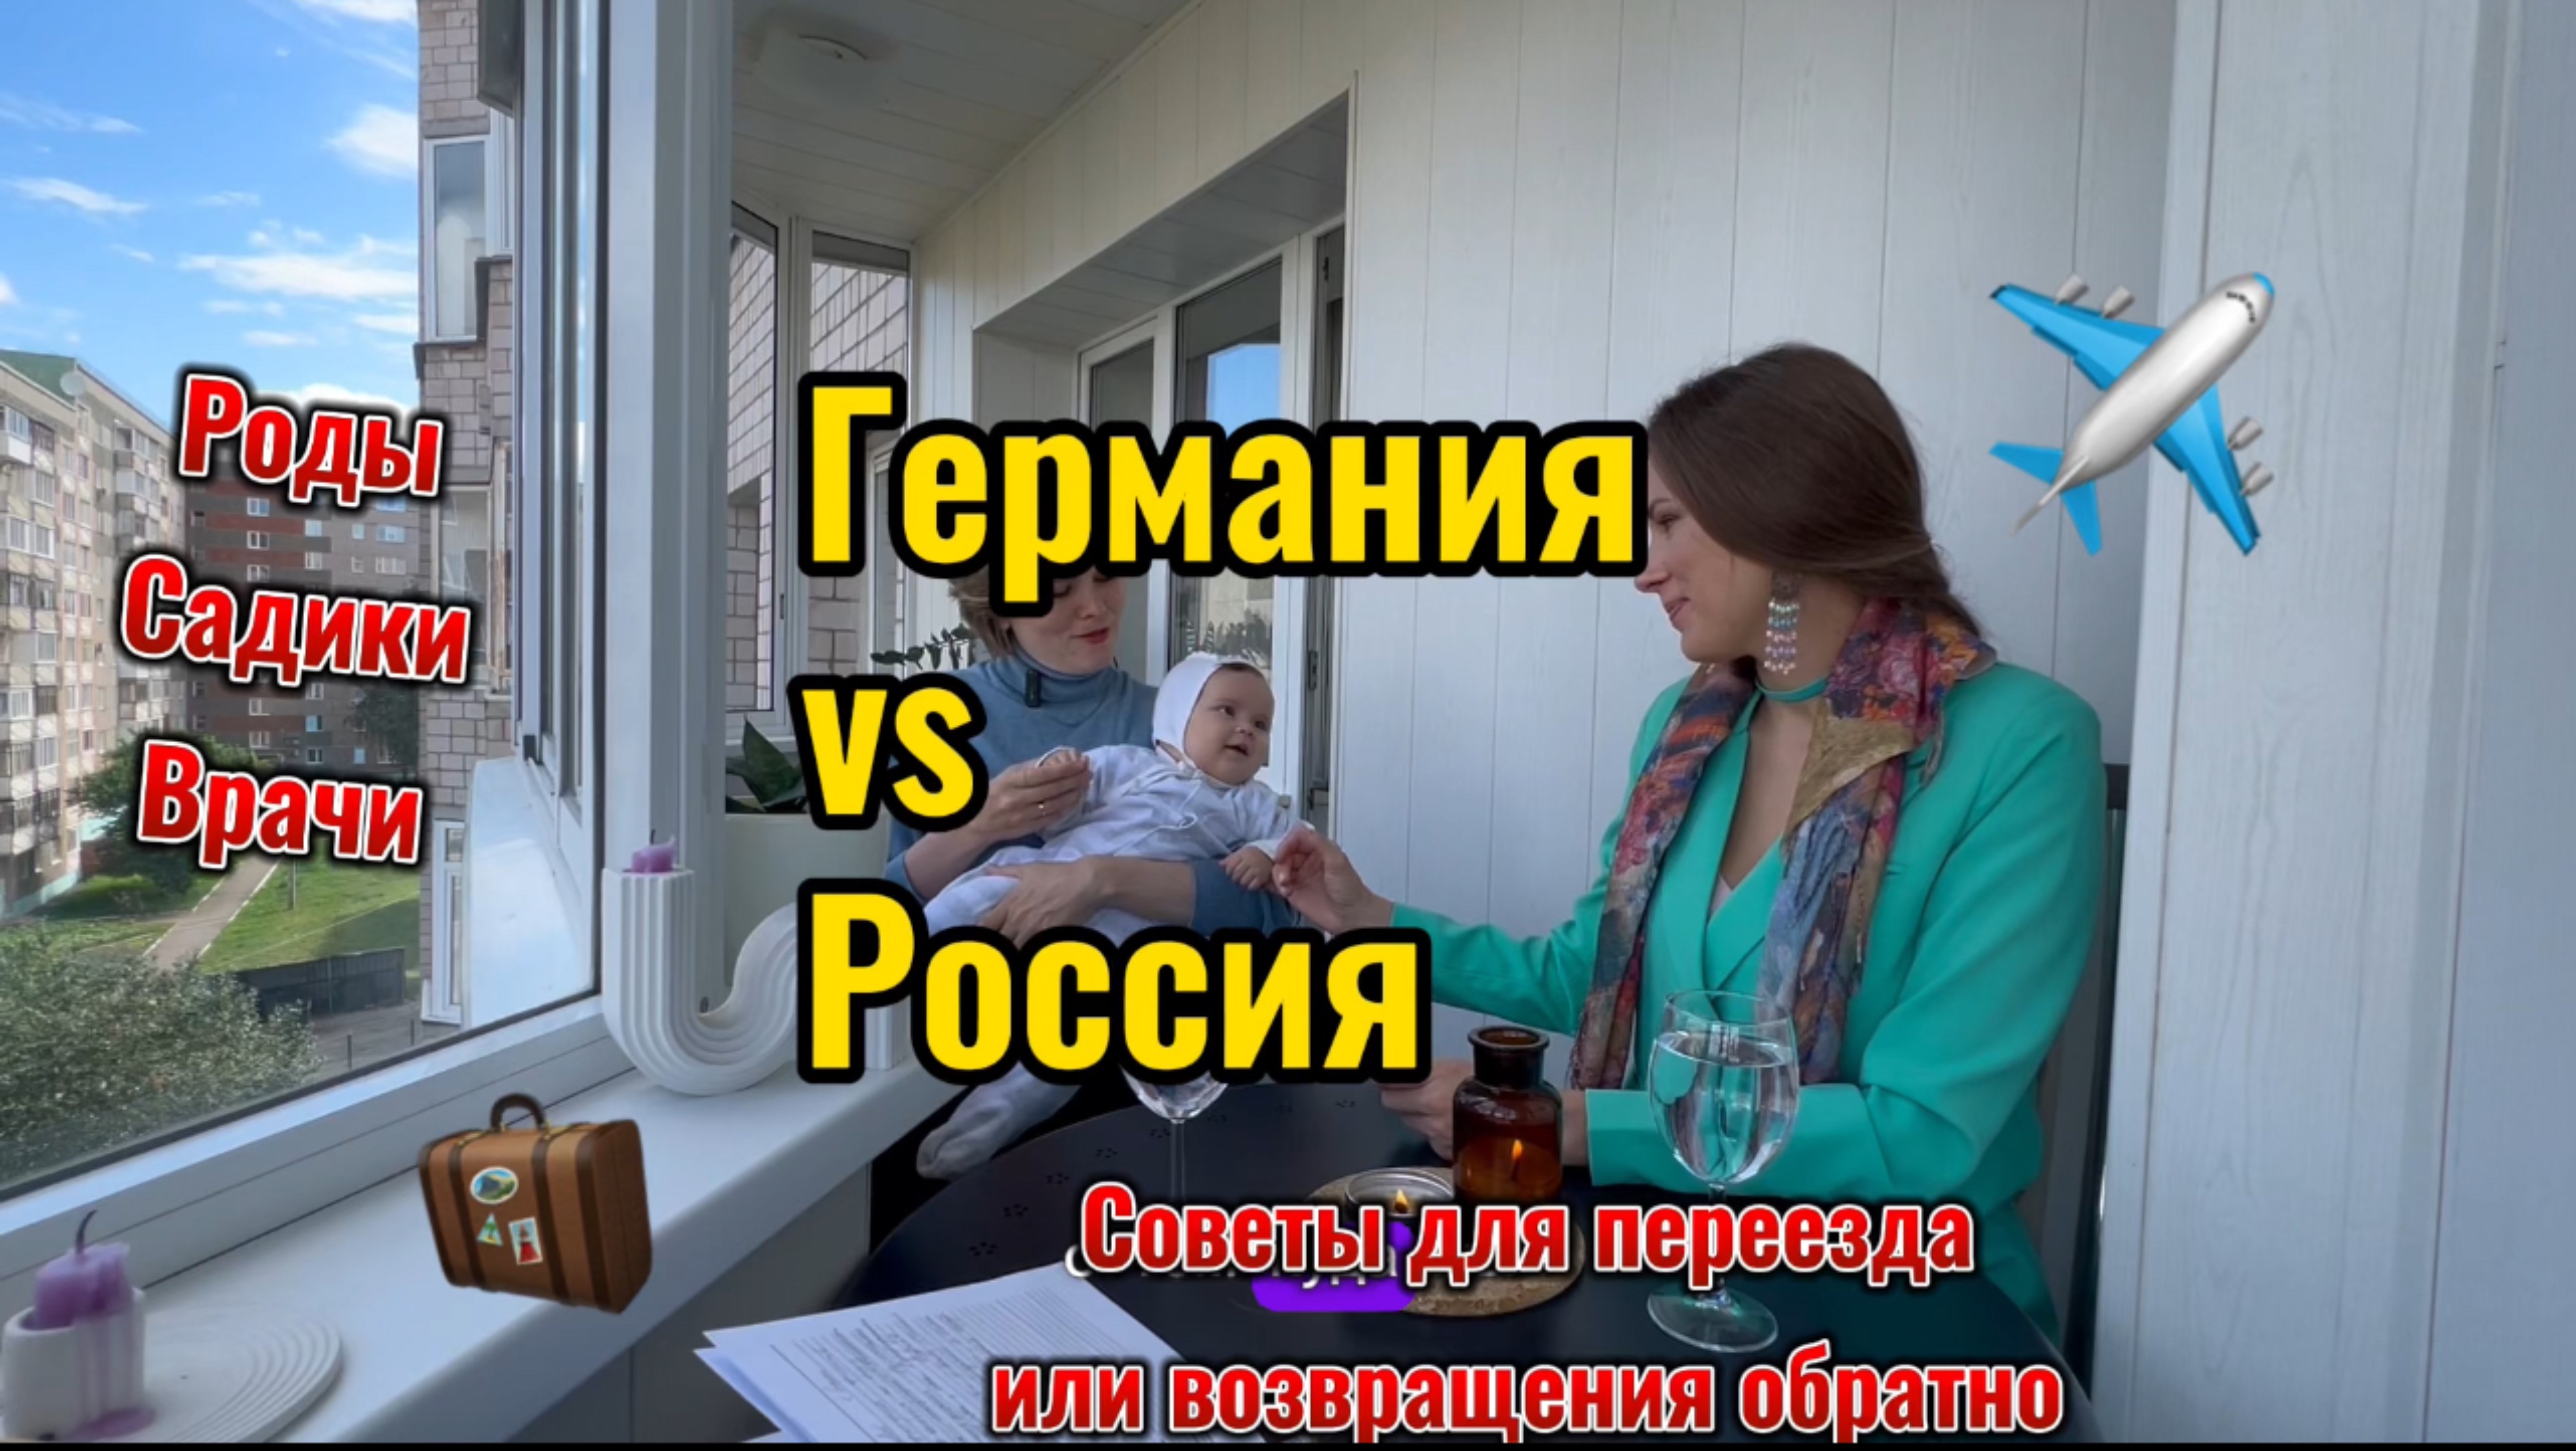 Из Германии обратно в Россию: Роды, детские сады, где лучше? Опыт русской мамы Юлии Мамченко